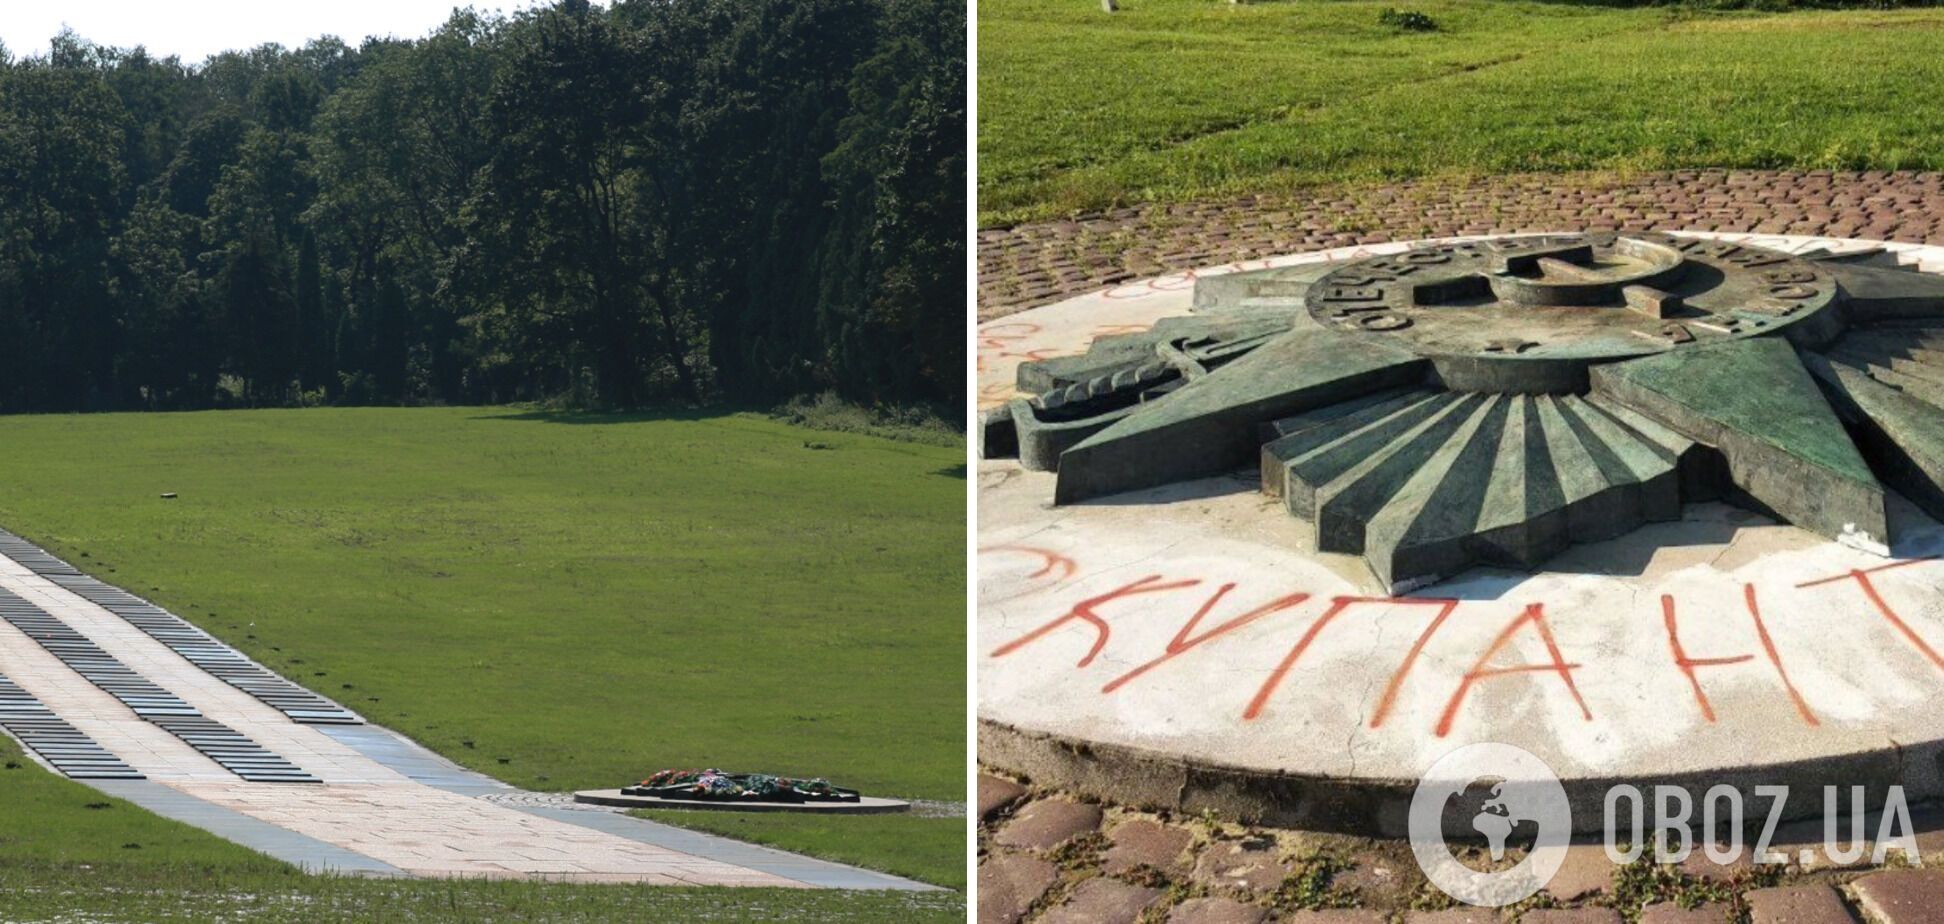 Советская звезда на военном мемориале "Марсовое поле" во Львове